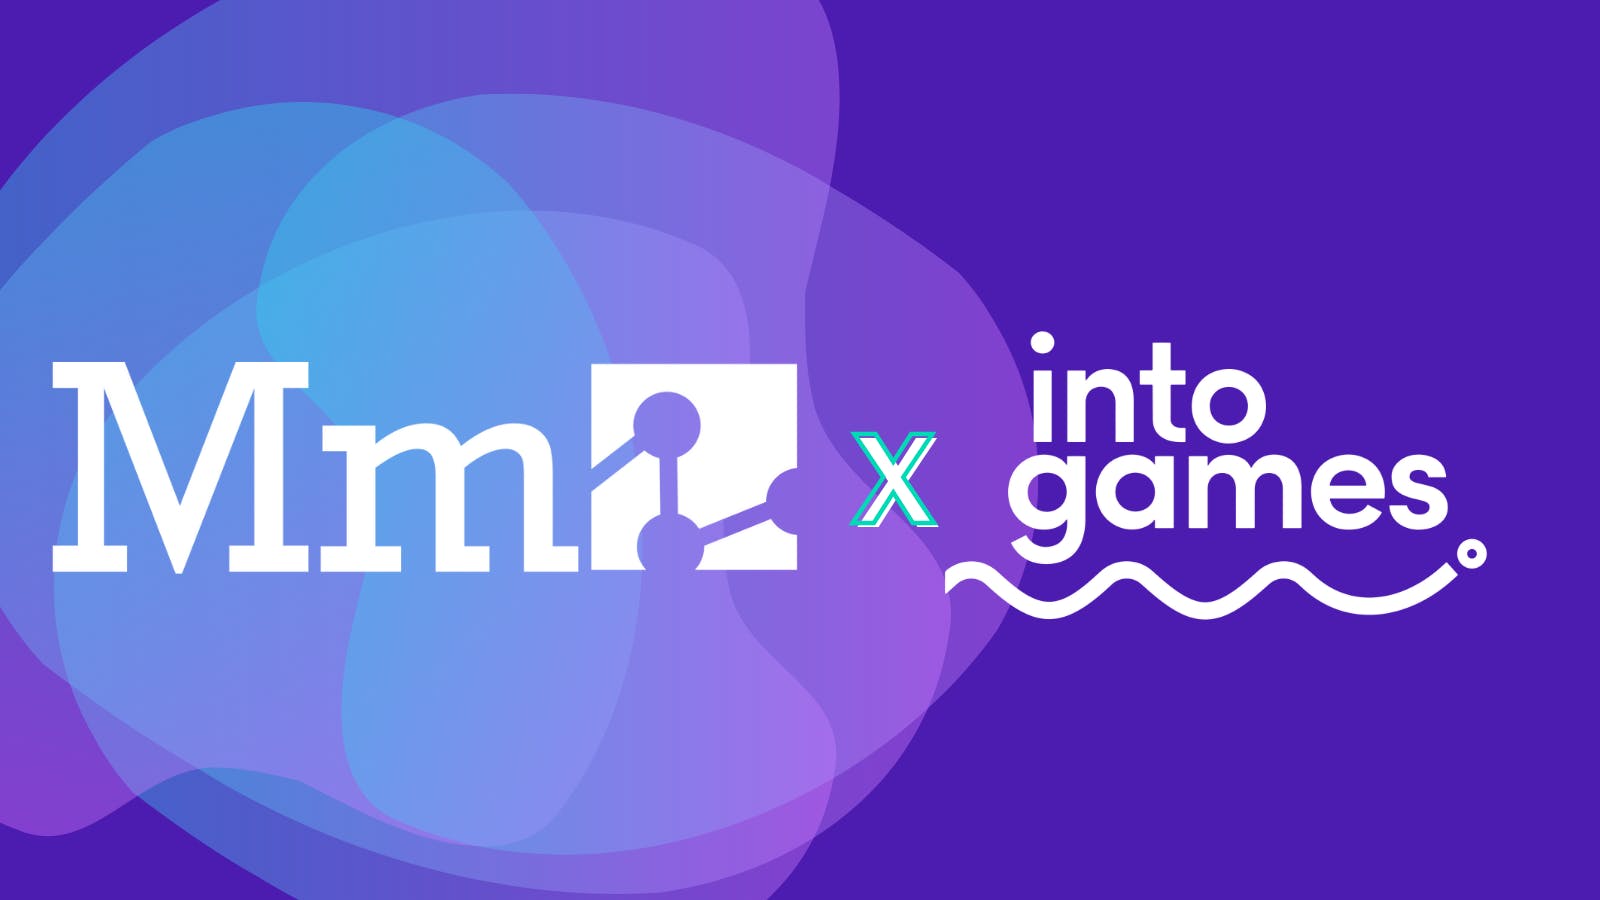 Media Molecule are Into Games Partners